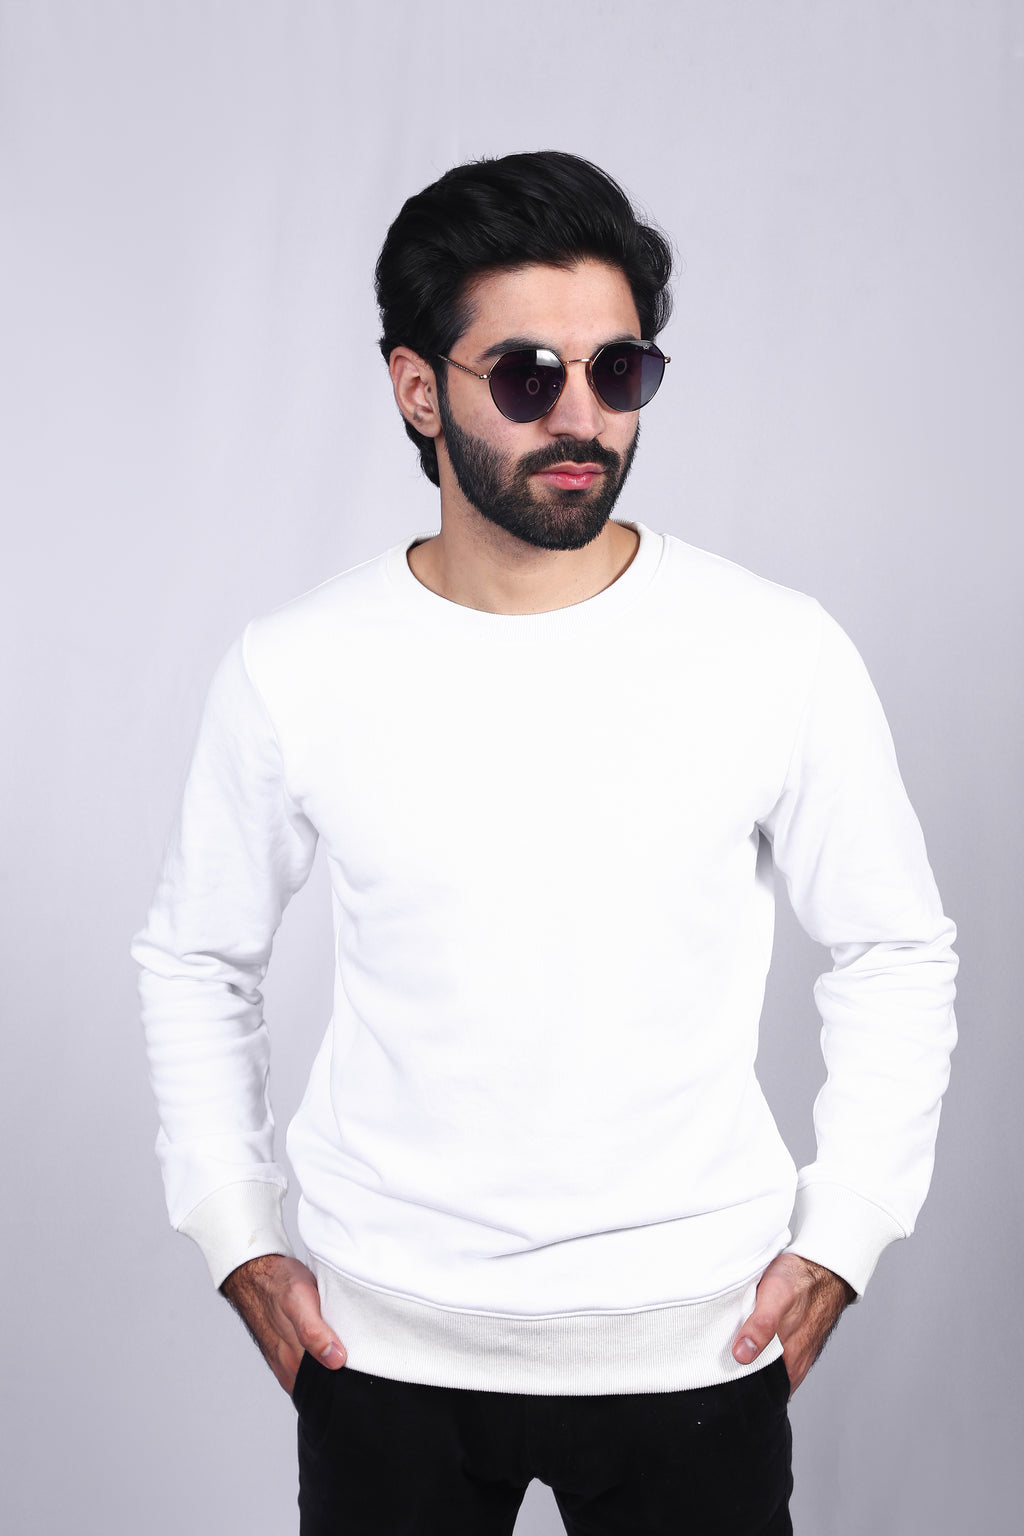 Plain White Sweatshirt